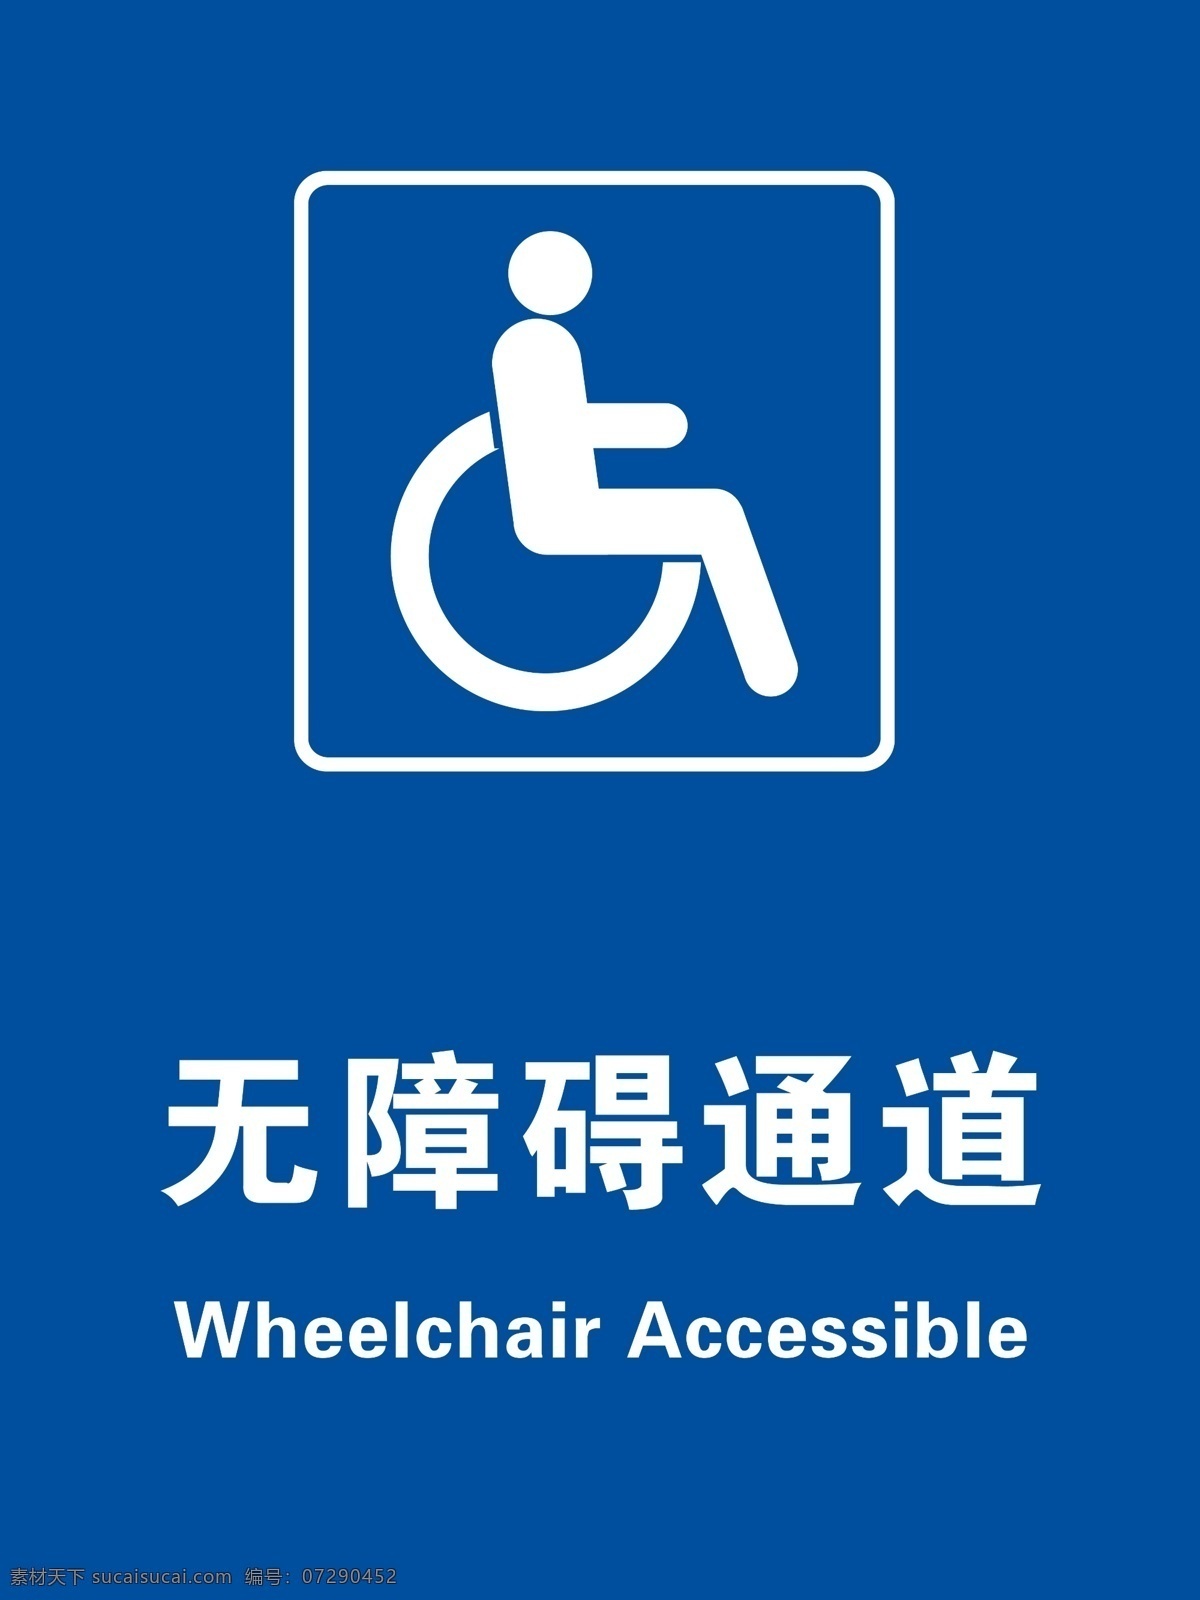 无障碍通道 求助电话 残疾人通道 无障碍 残疾人 分层